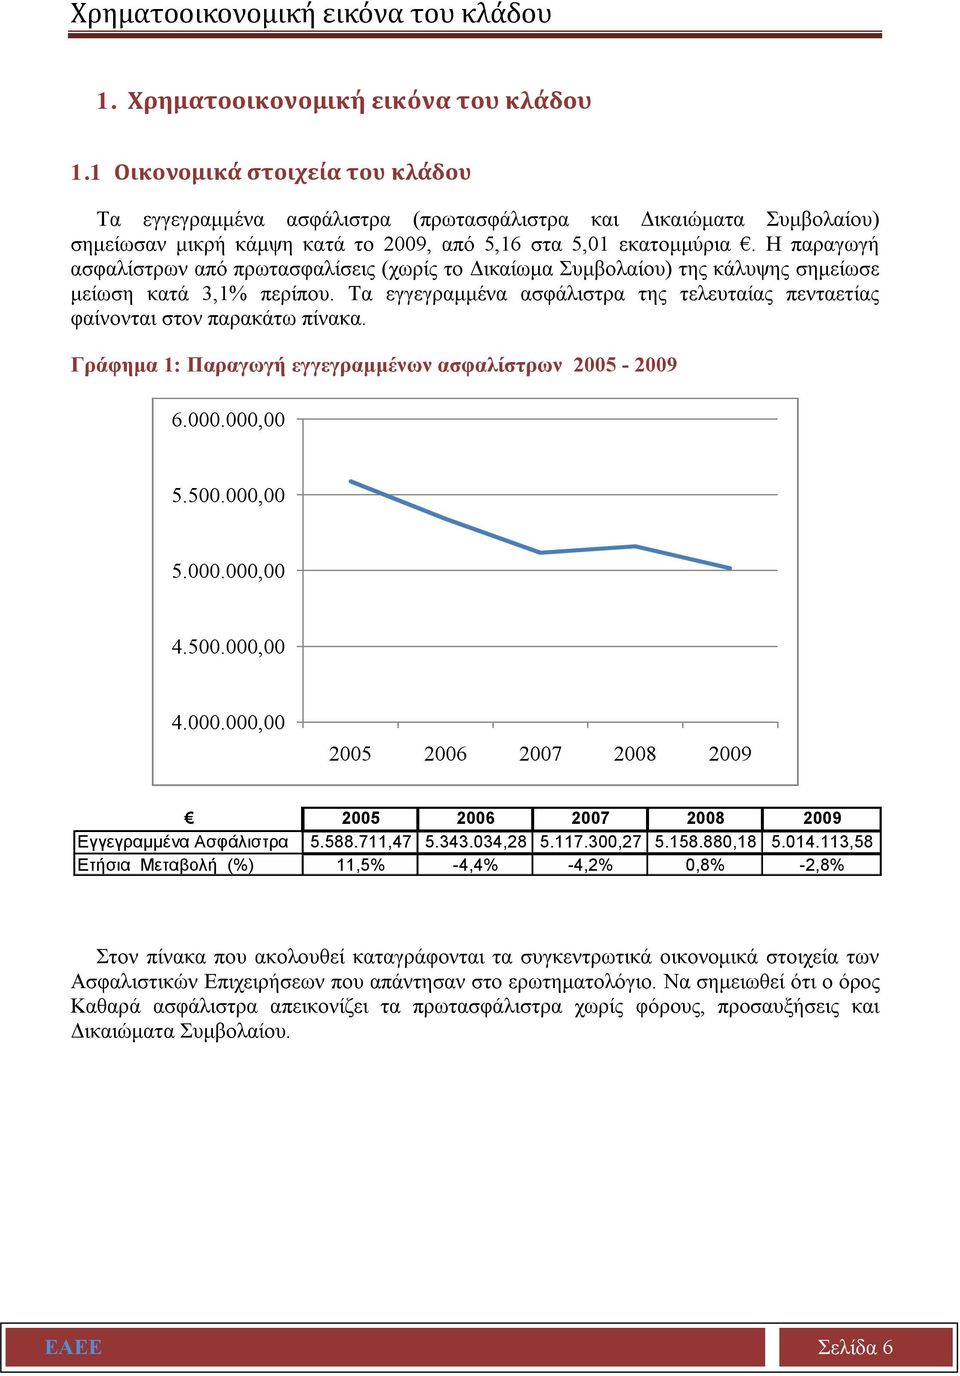 Η παραγωγή ασφαλίστρων από πρωτασφαλίσεις (χωρίς το Δικαίωμα Συμβολαίου) της κάλυψης σημείωσε μείωση κατά 3,1% περίπου.